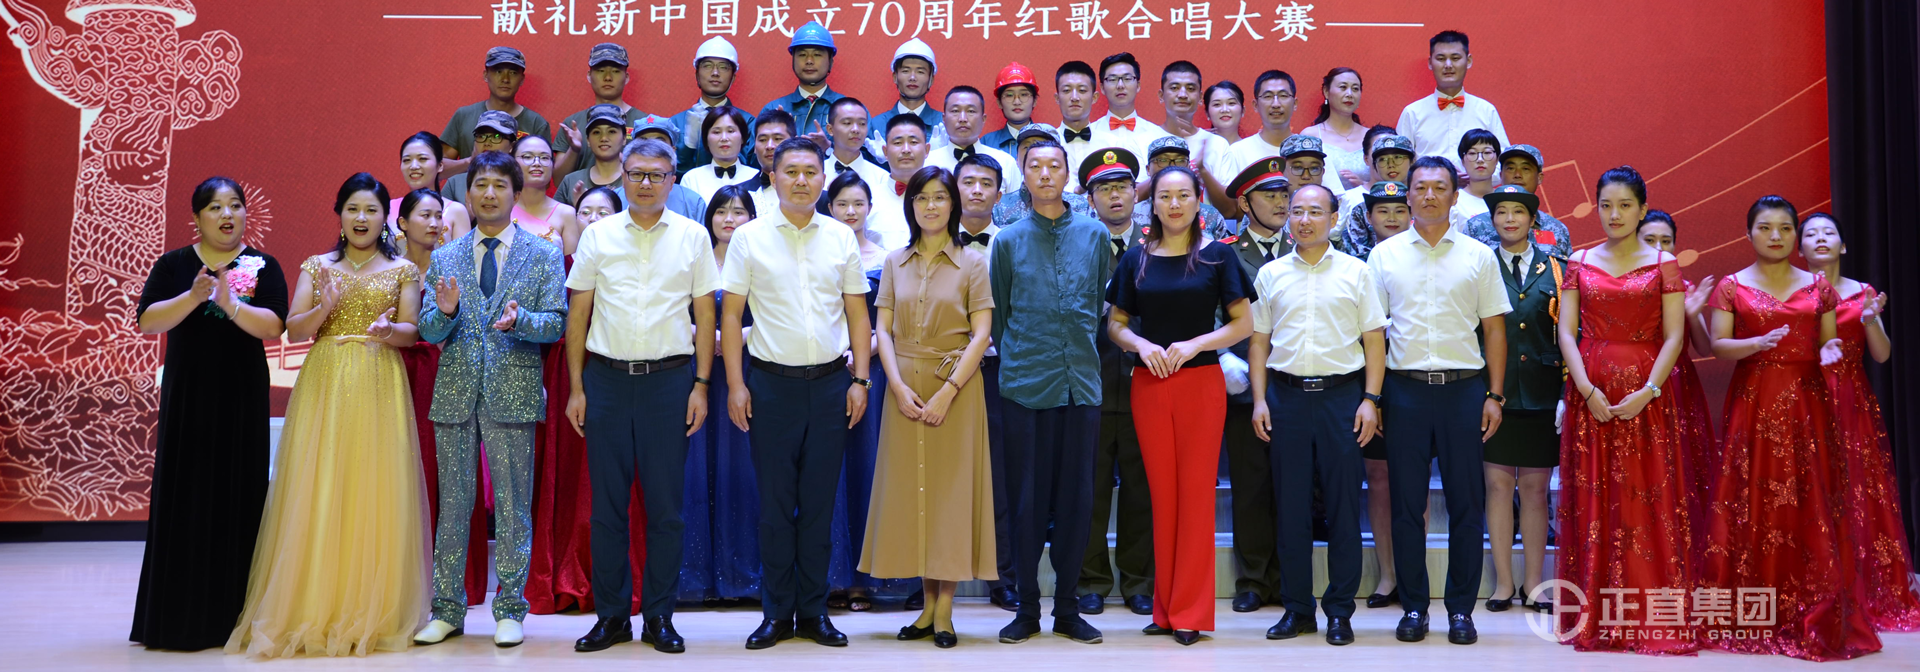 歌颂祖国 唱响明天 ——正直集团献礼新中国成立70周年红歌合唱大赛圆满完成